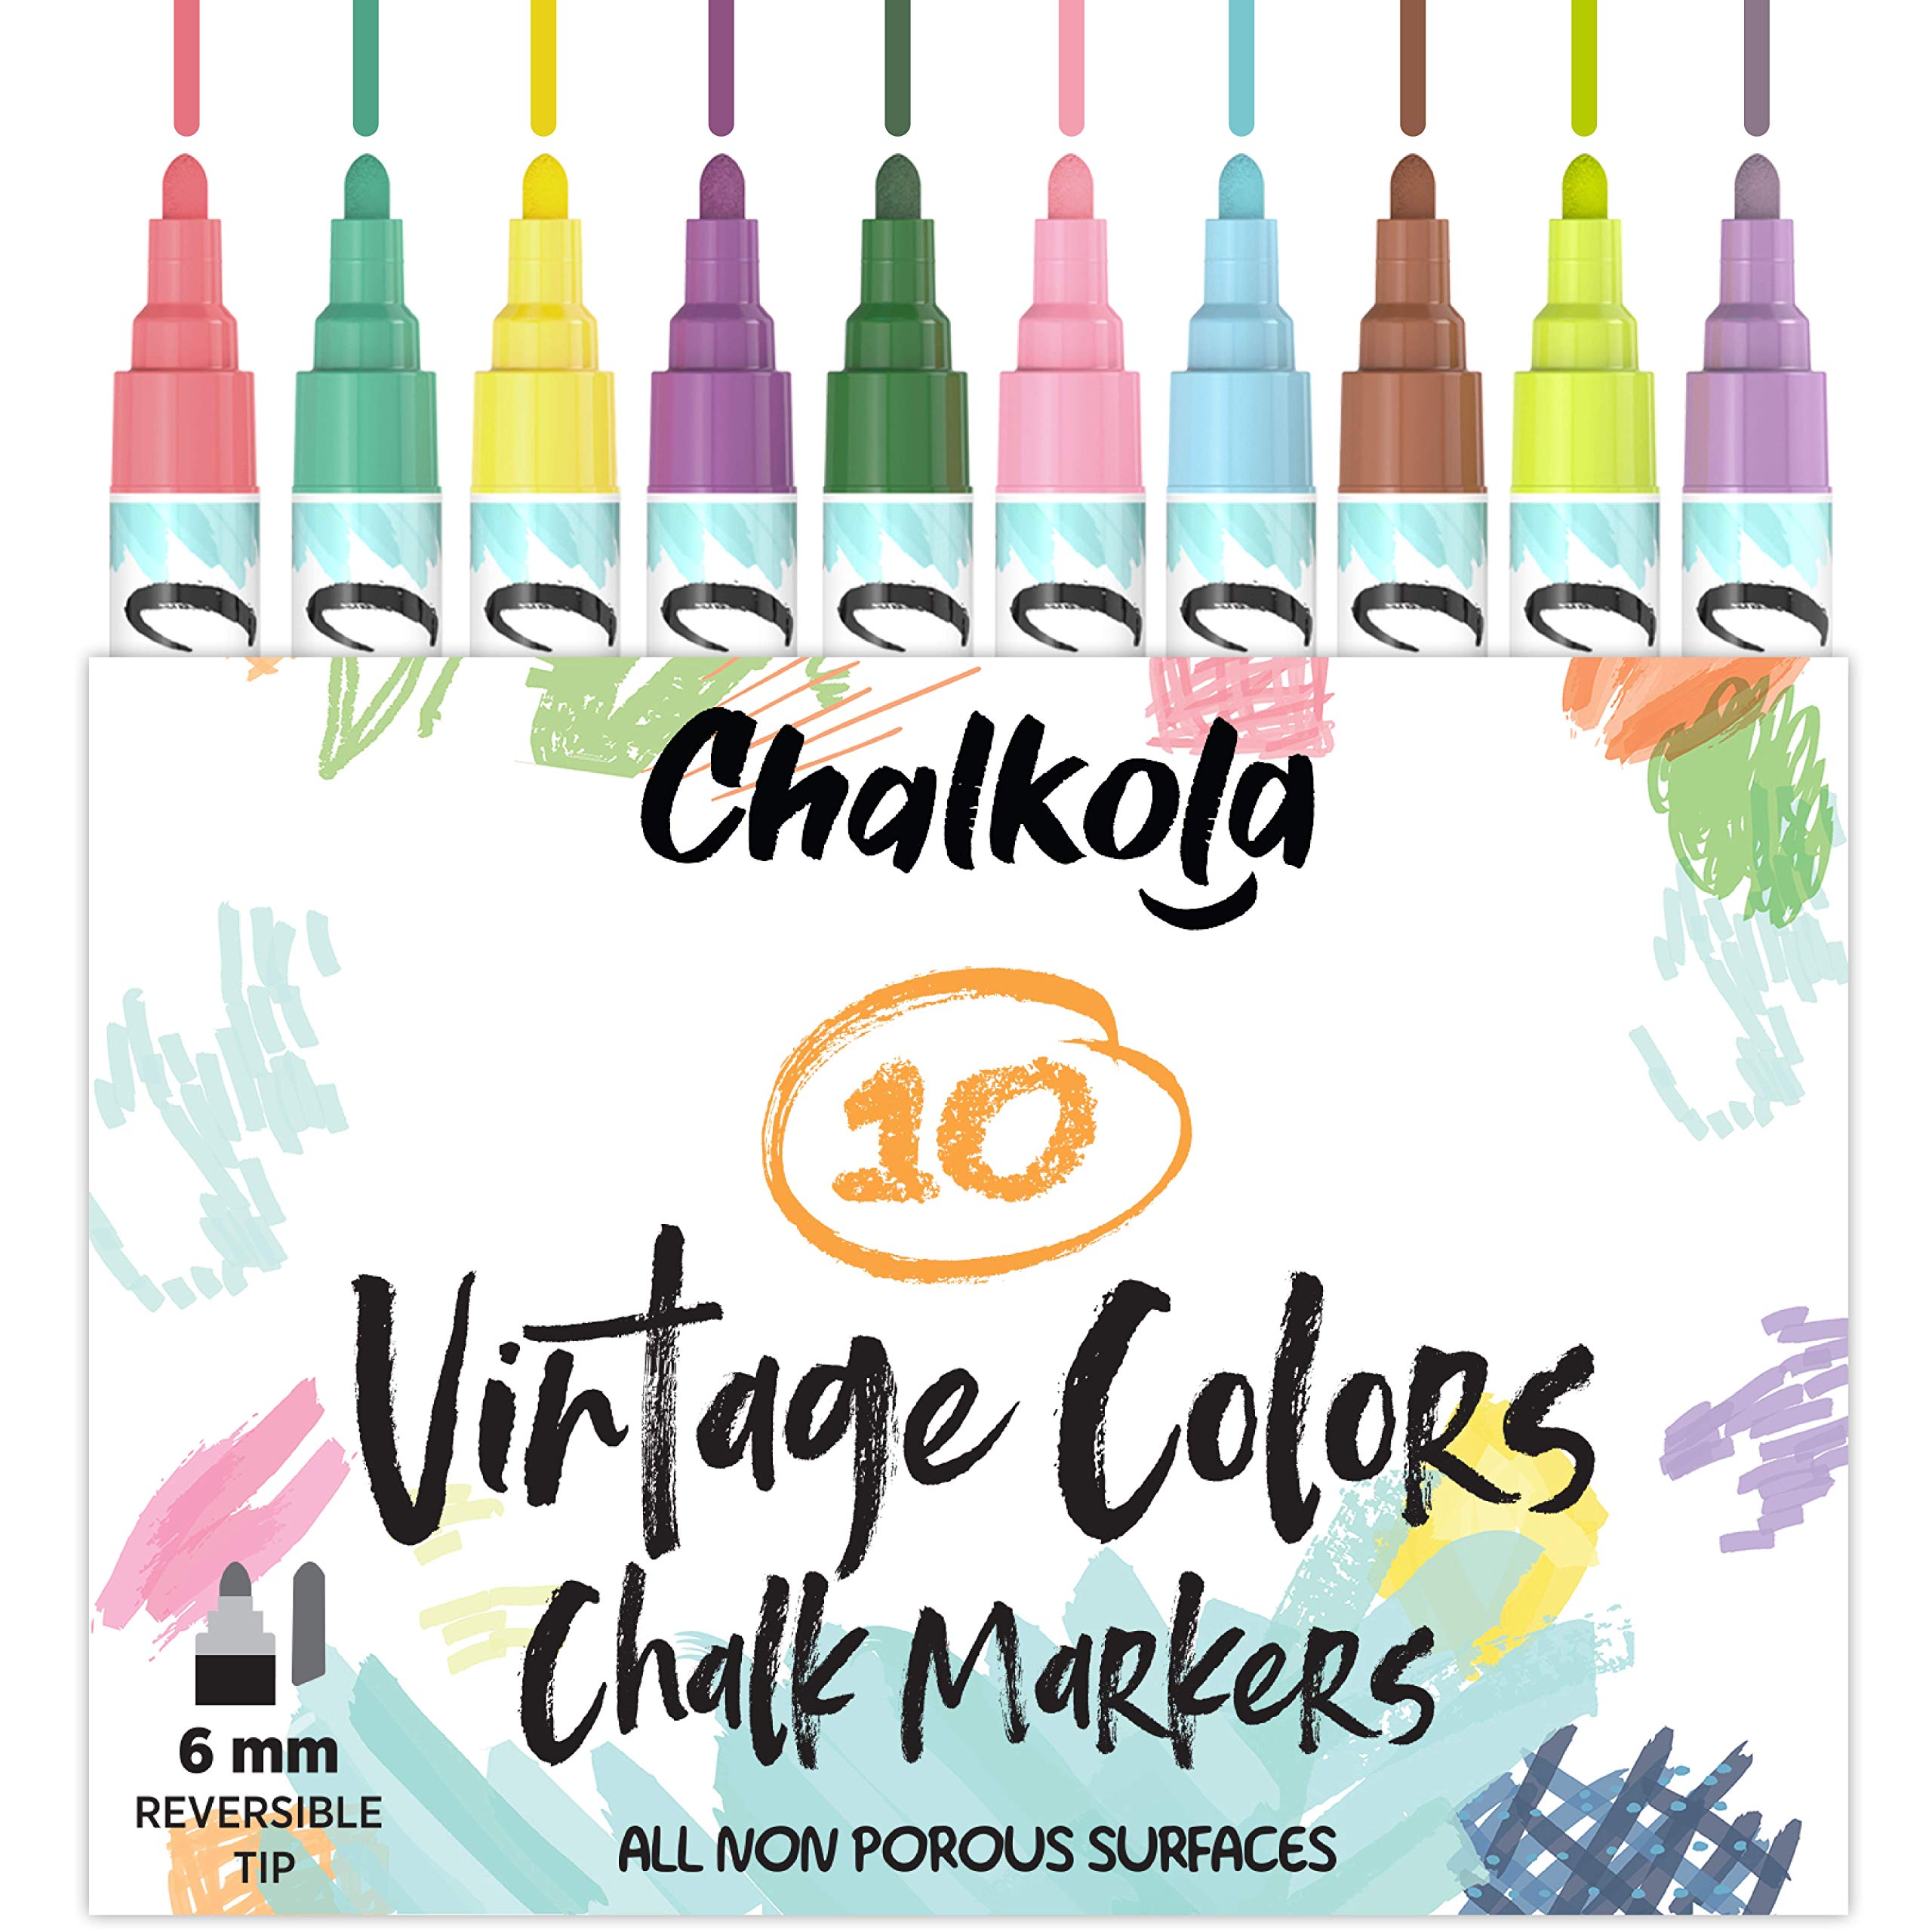 Chalkola Liquid Chalk Markers for Chalkboard, Blackboard, Window